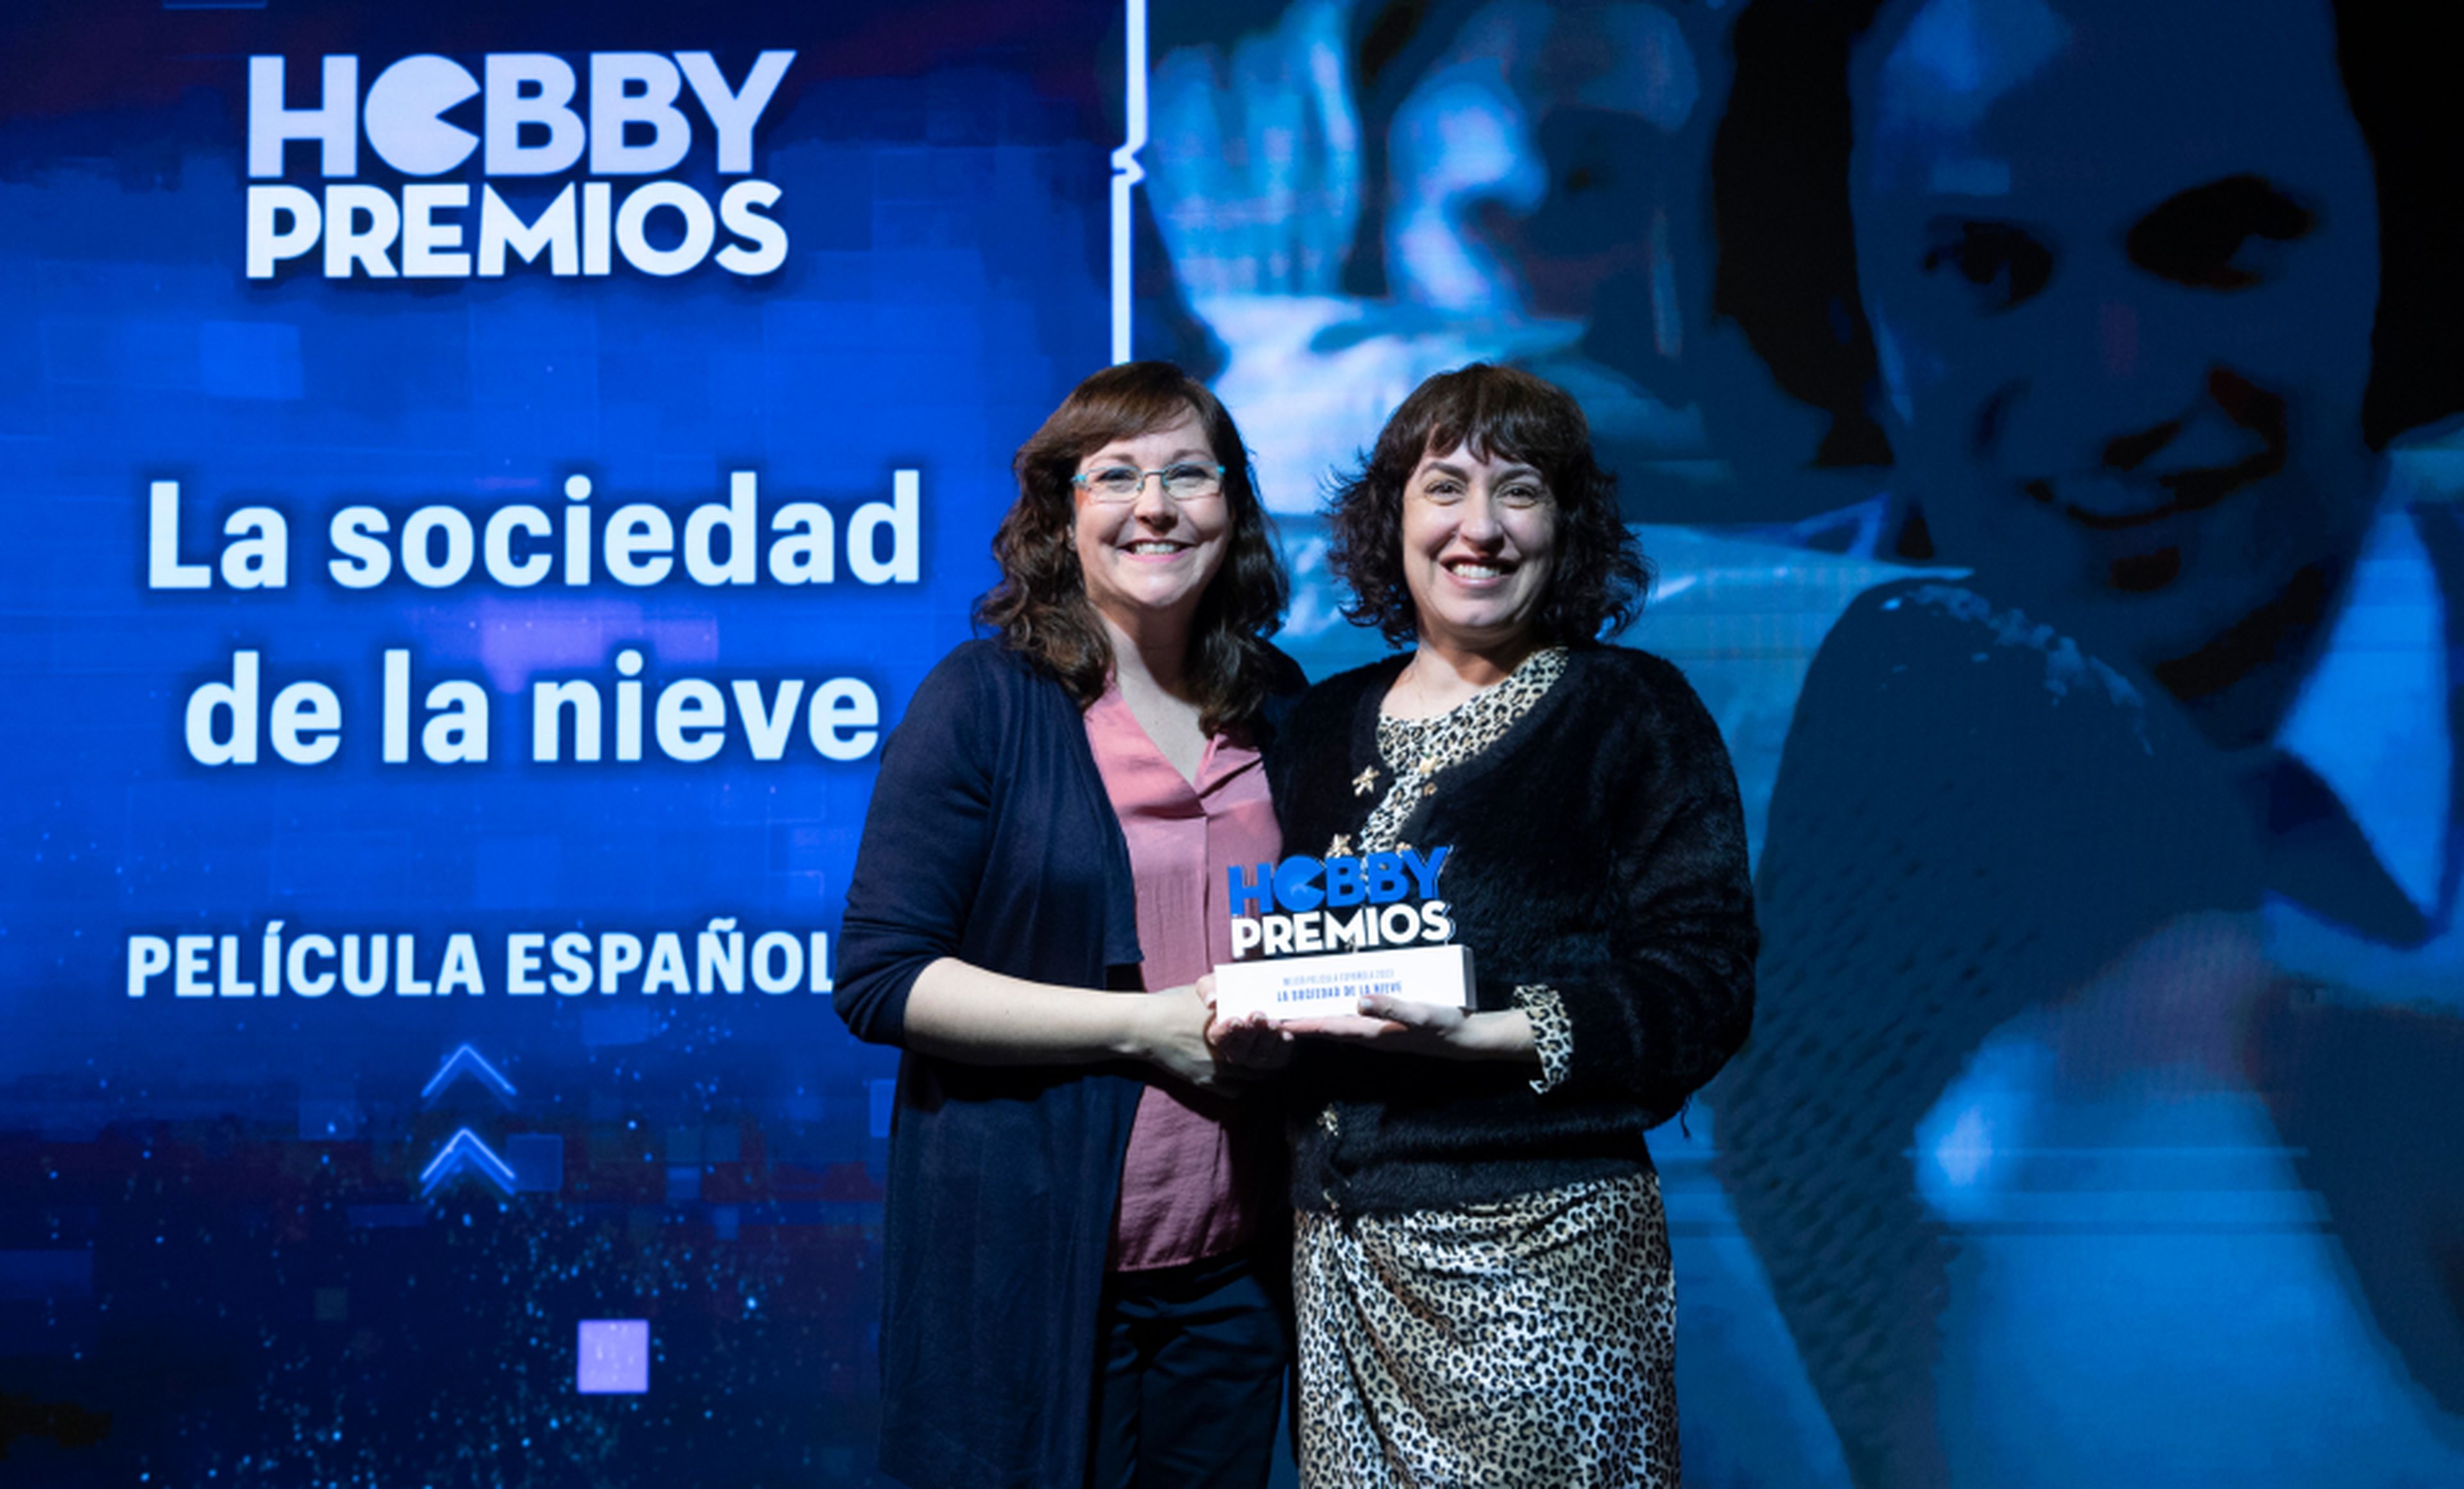 De izquierda a derecha: Raquel Hernández, redactora de HobbyCine entrega a Rut Rey, PR Senior de Netflix el premio a mejor película española por La sociedad de la nieve.